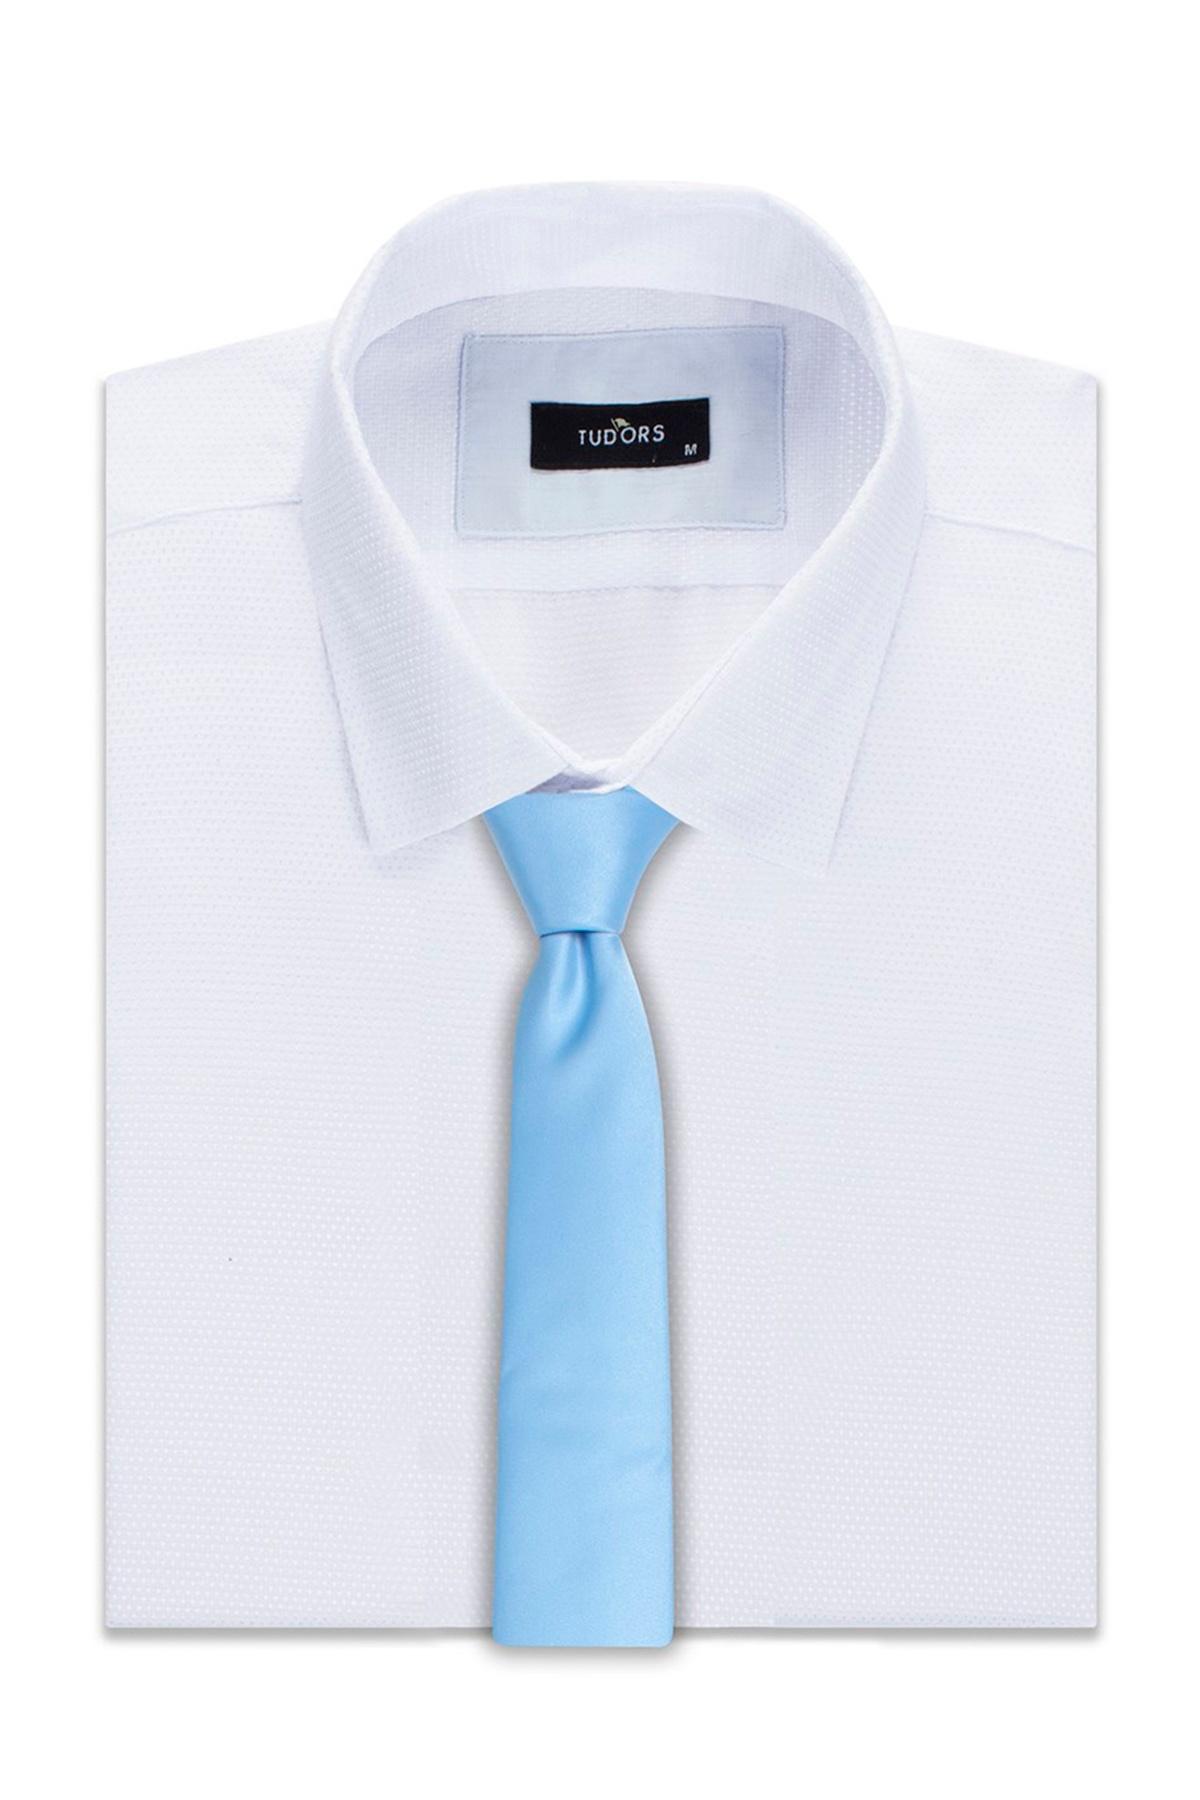 Selected image for TUDORS Klasična kravata plava